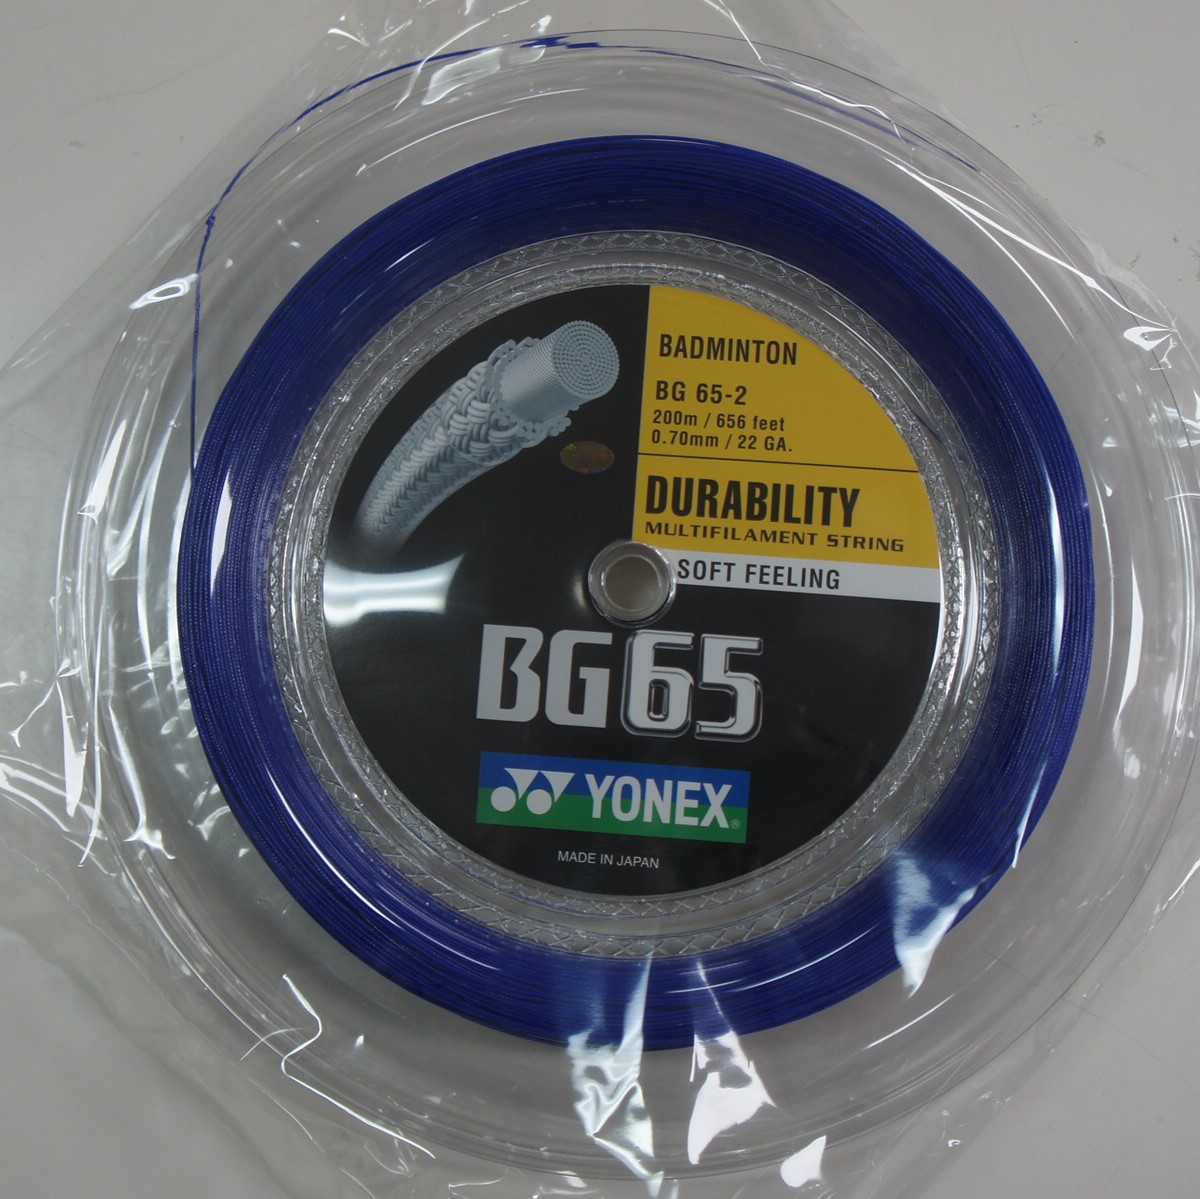 Yonex BG65 Badminton String 0.70mm Royal Blue 200m 